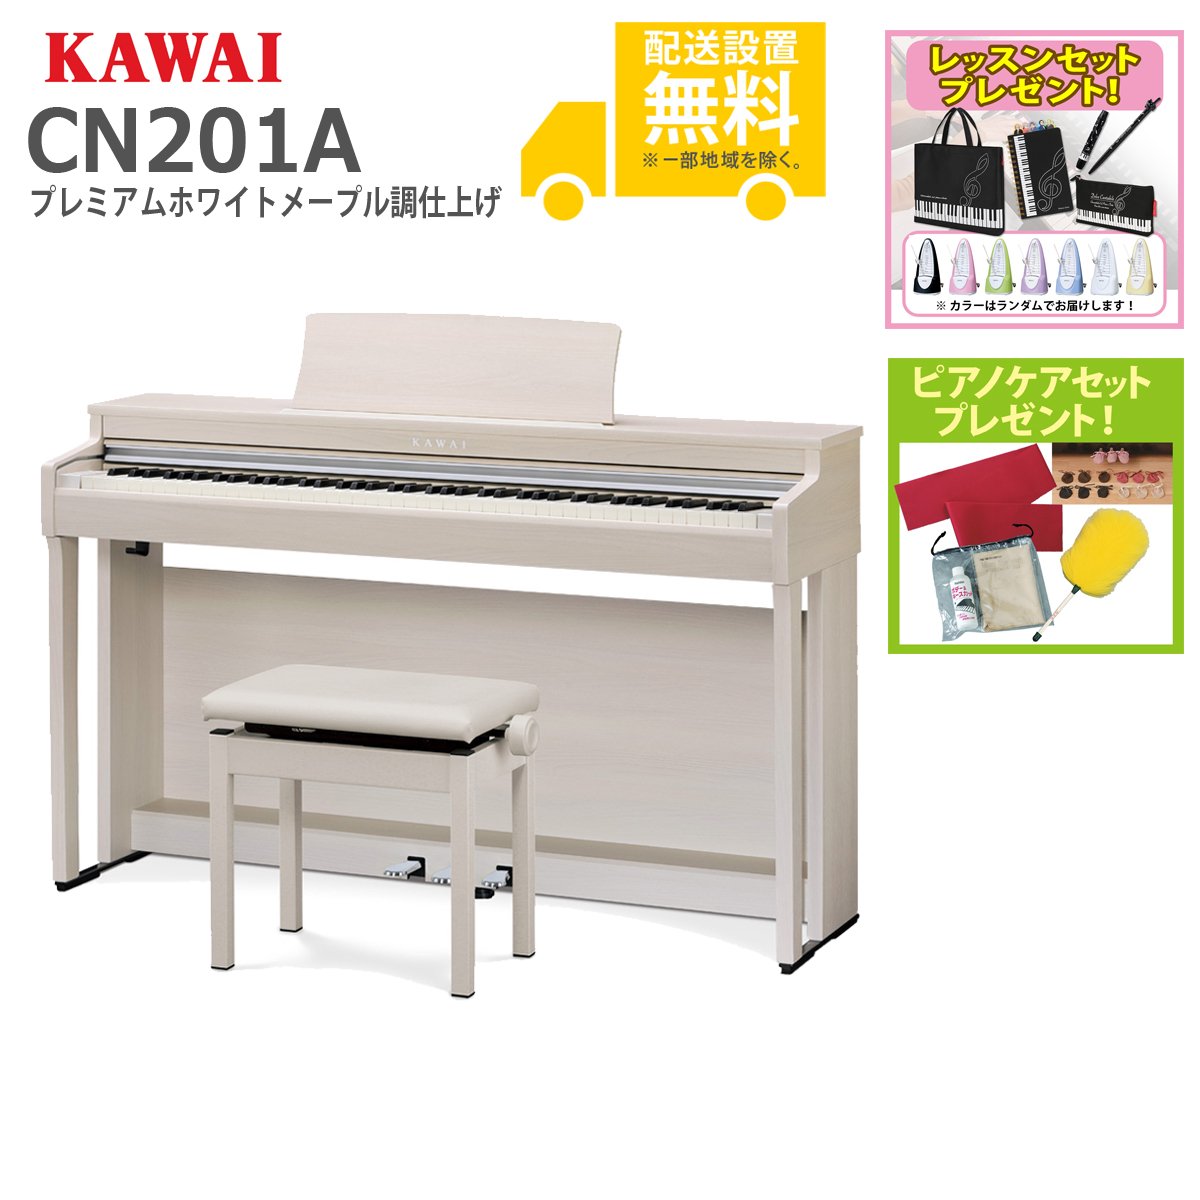 【全国組立設置無料】KAWAI カワイ / CN201A プレミアムホワイトメープル調仕上げ  電子ピアノ(CN201)【お手入れセットプレゼント：set78332】【代引不可】